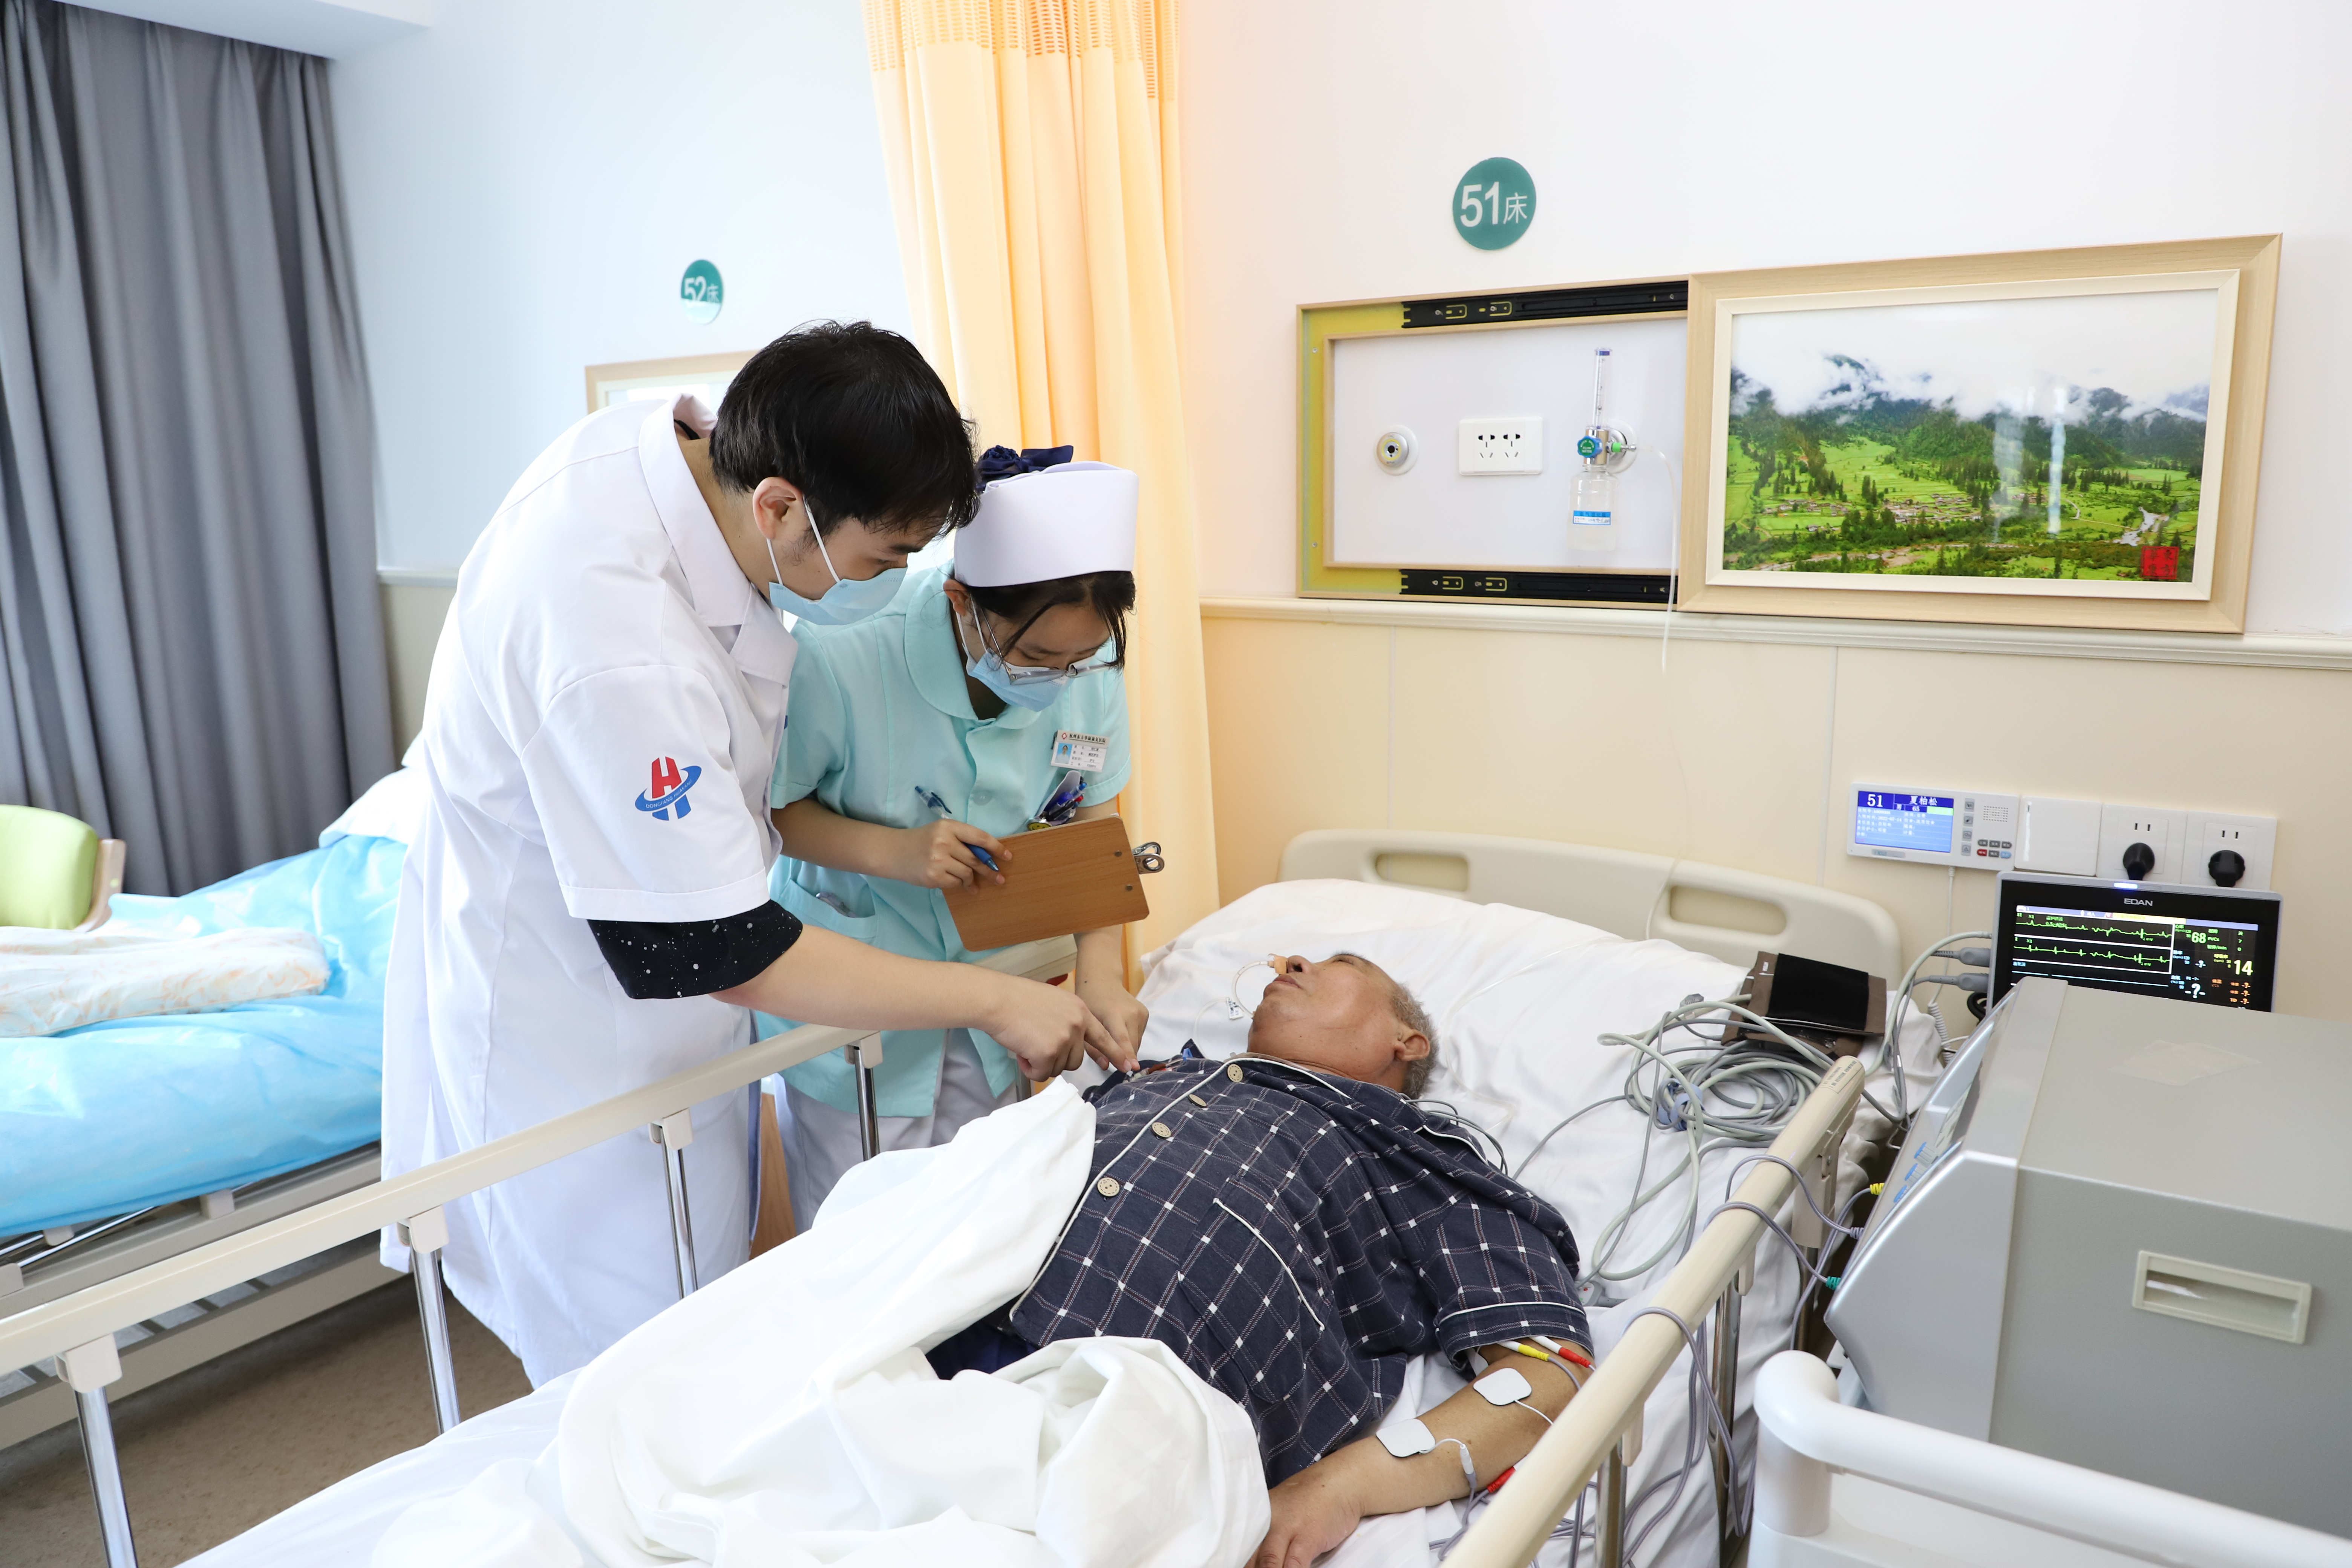 面对日益增长的多样化护理需求，杭州金诚护理院不断提升服务质量和患者体验，守护患者健康